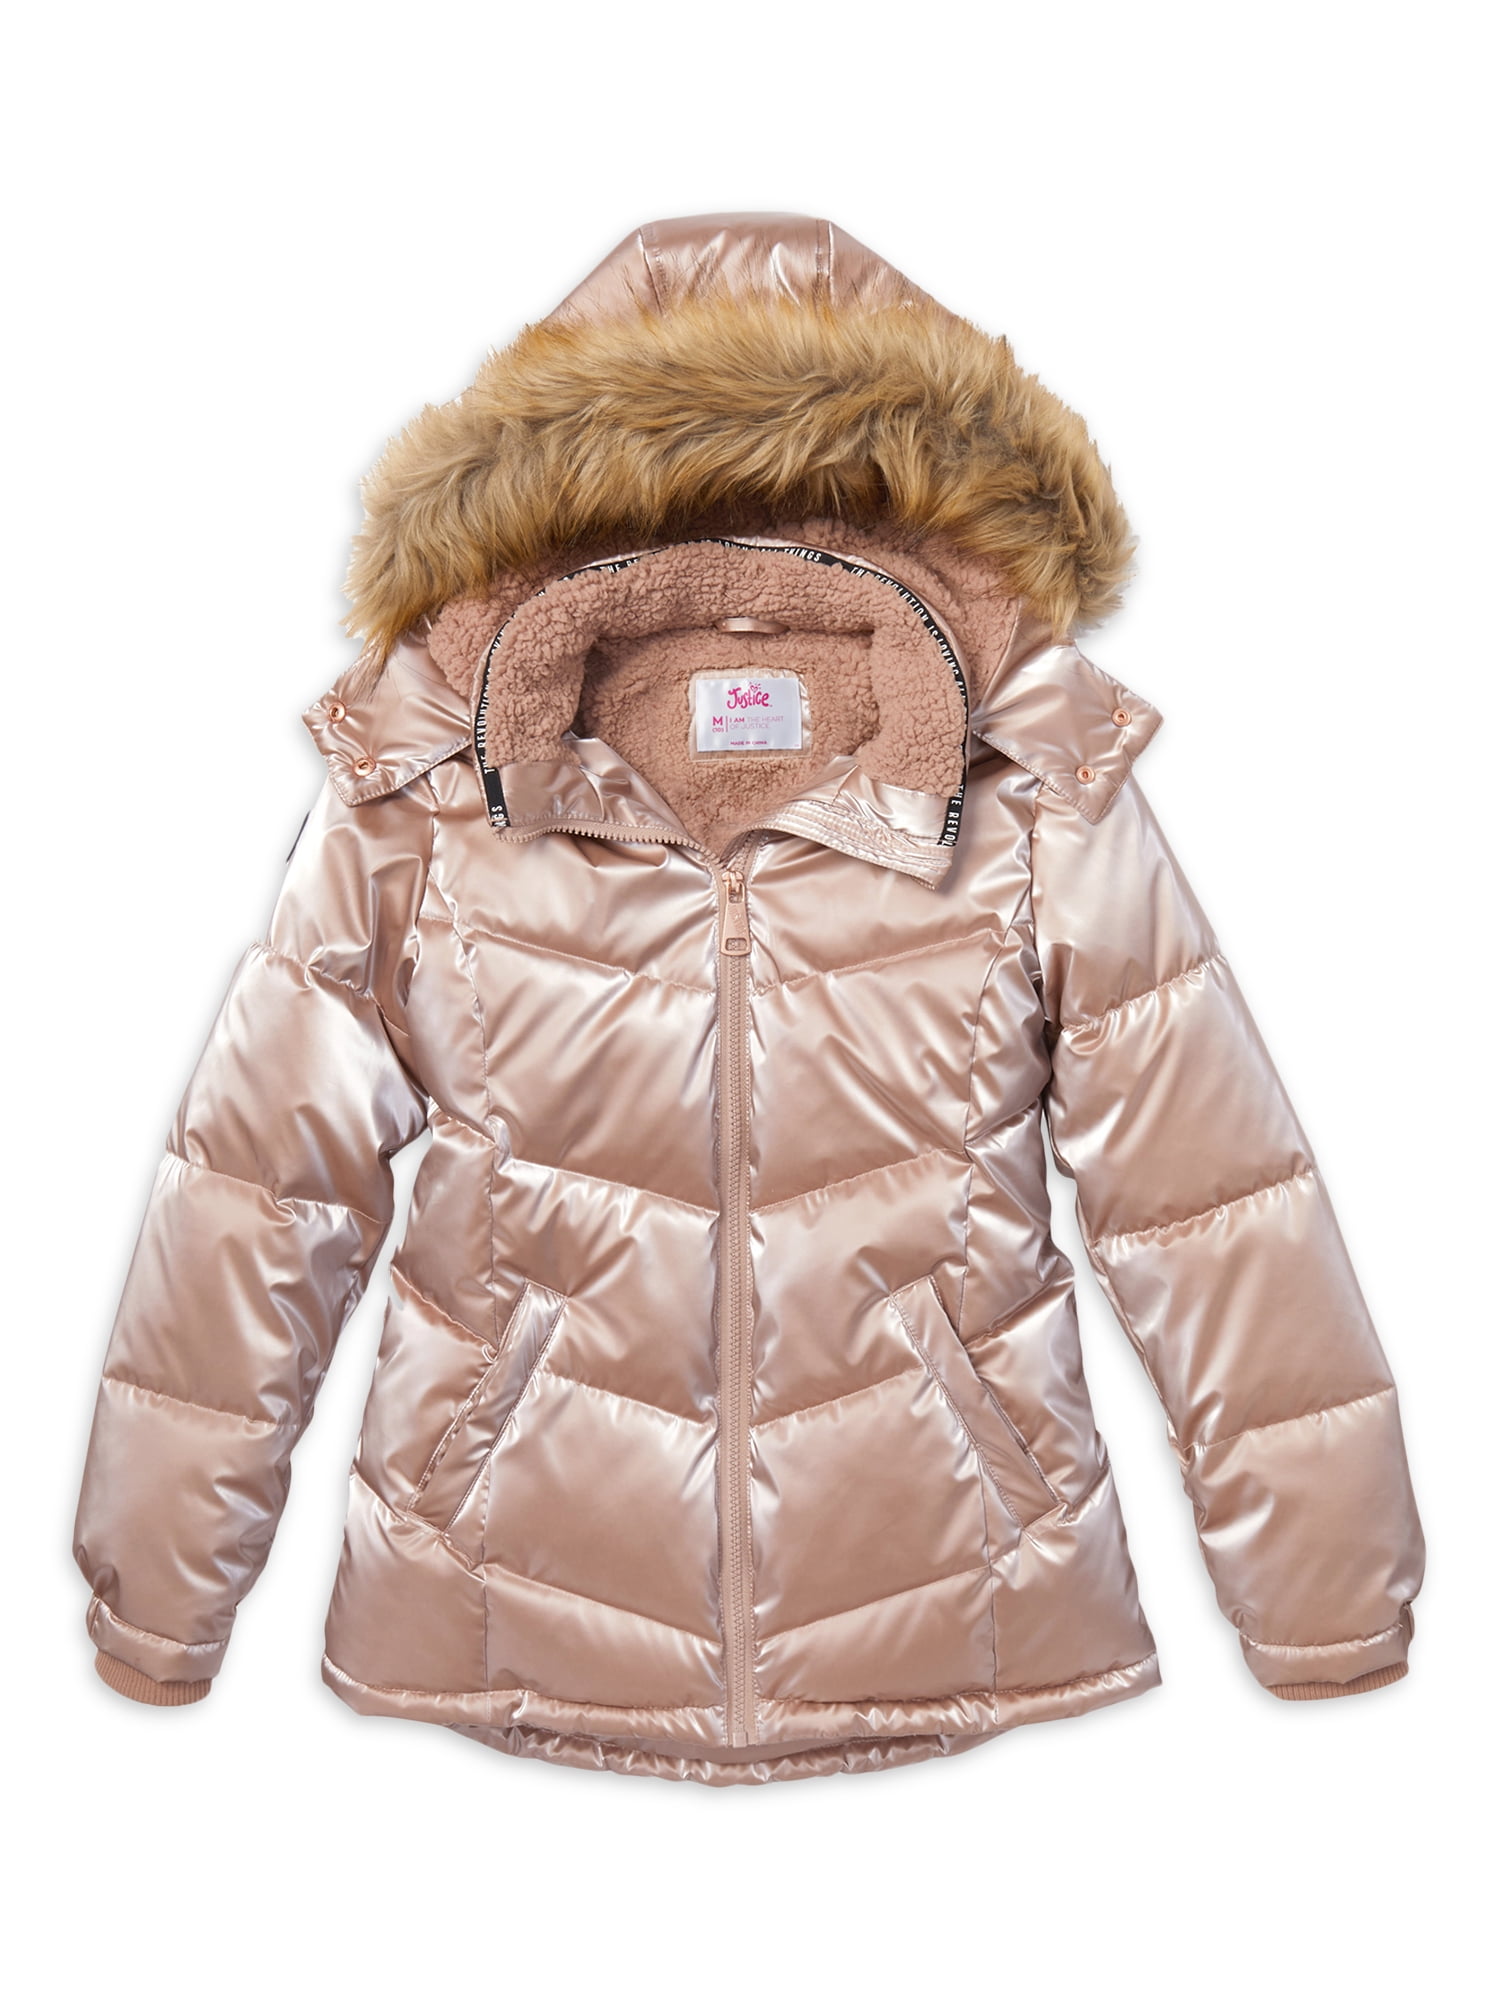 Boys Winter Hooded Down Coat Jacket Thick Fleece Inside Warm Faux Fur Outerwear